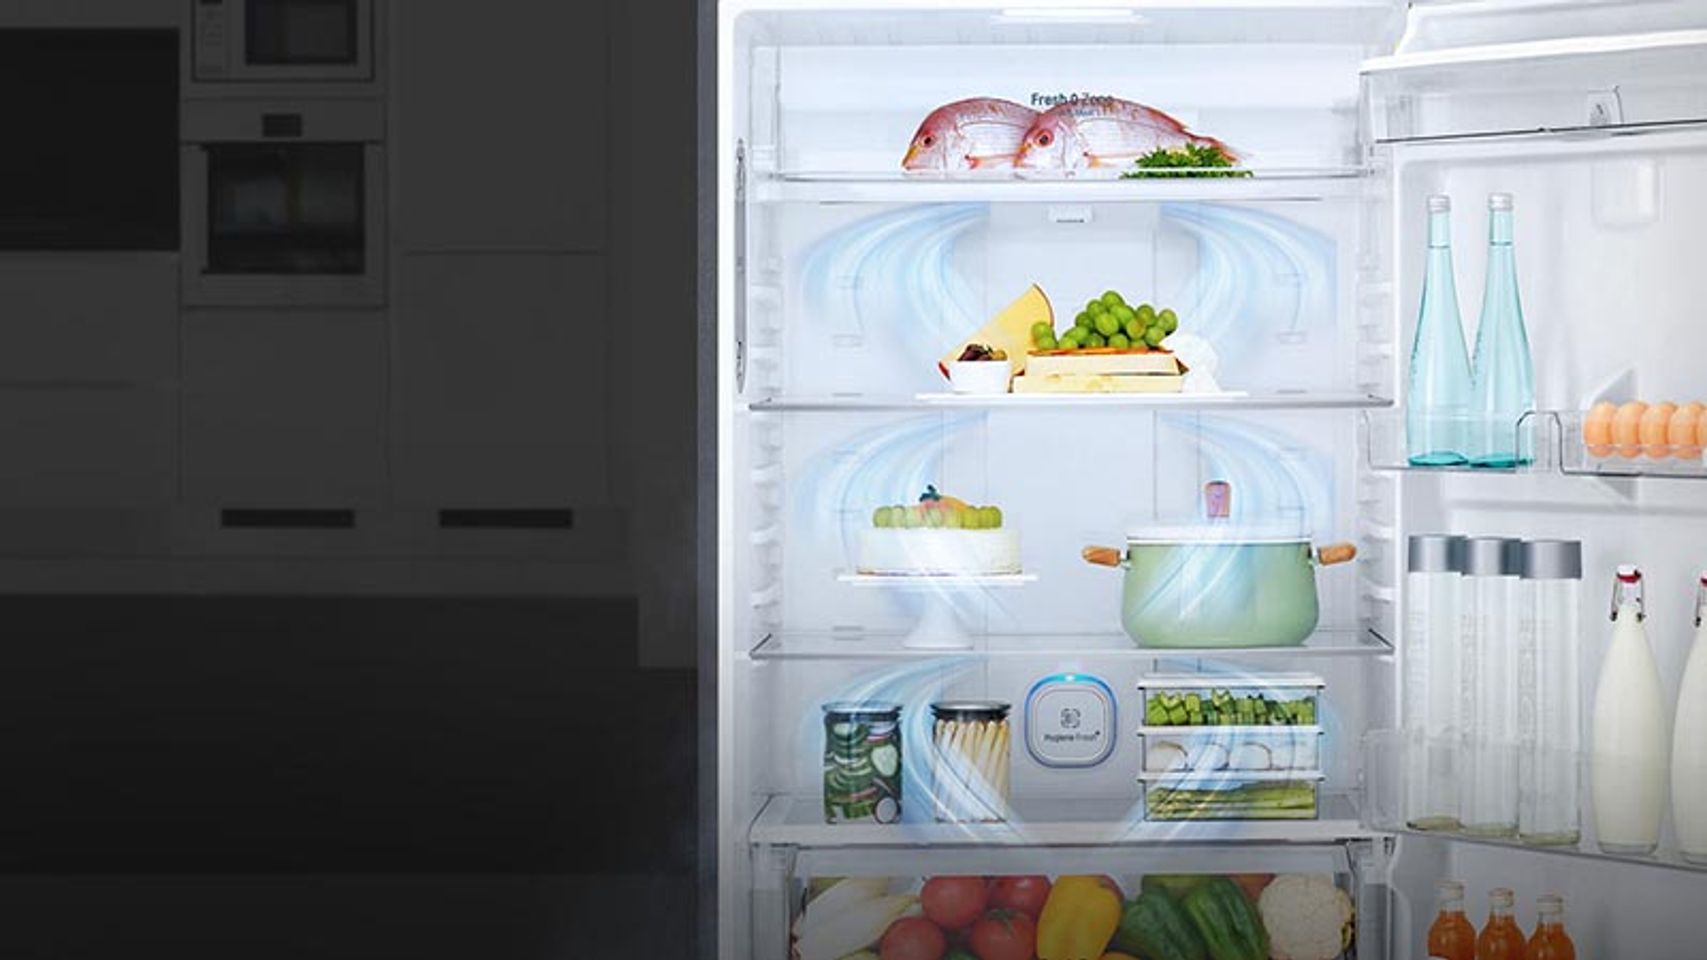 Tủ lạnh LG GN-L702GB 506 lít inverter 2 cánh